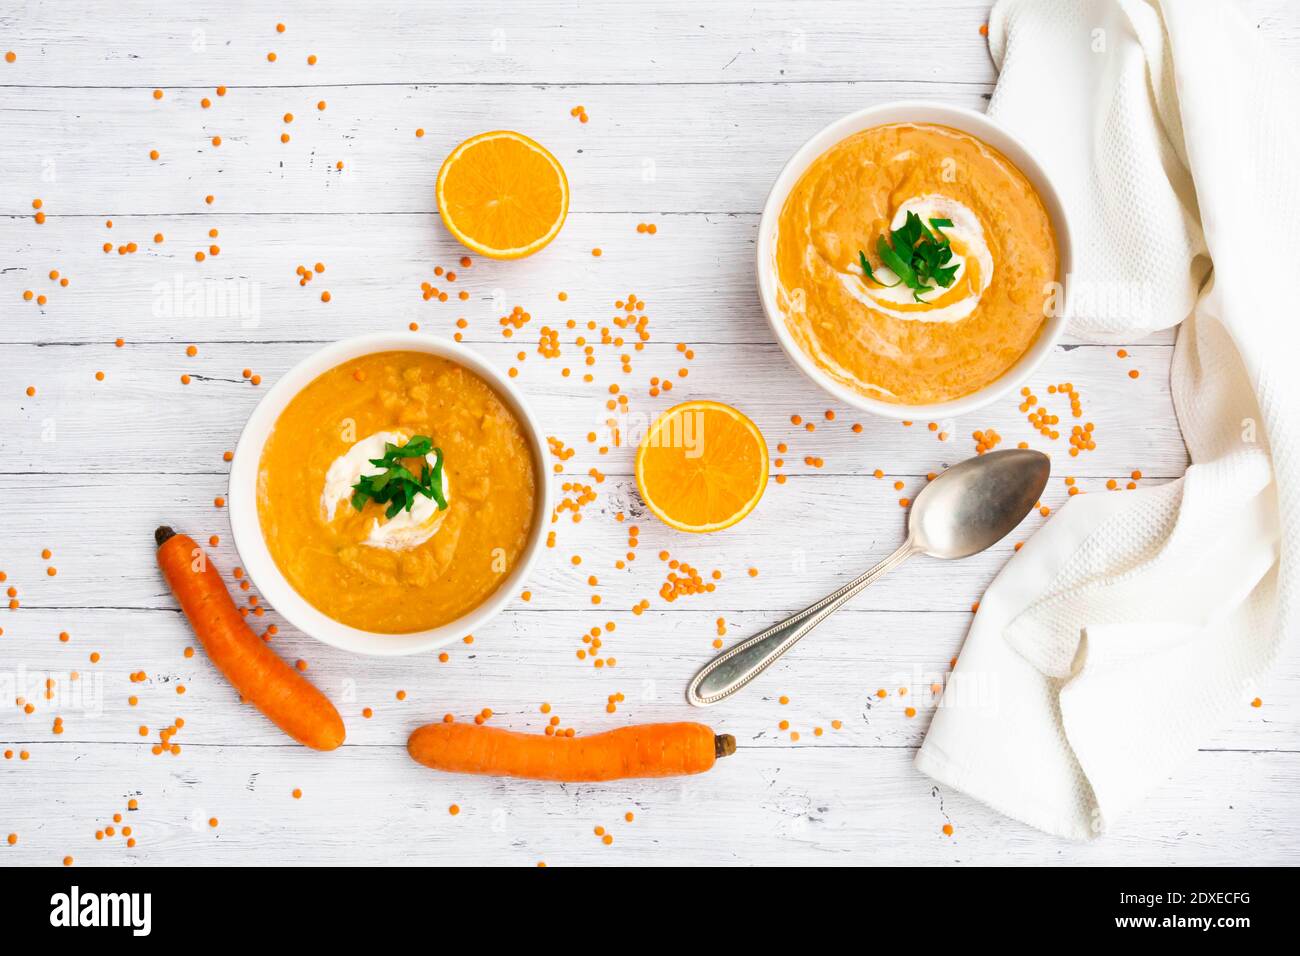 Due ciotole di zuppa vegetariana di lenticchie con carote, succo d'arancia, crema fraiche e prezzemolo Foto Stock